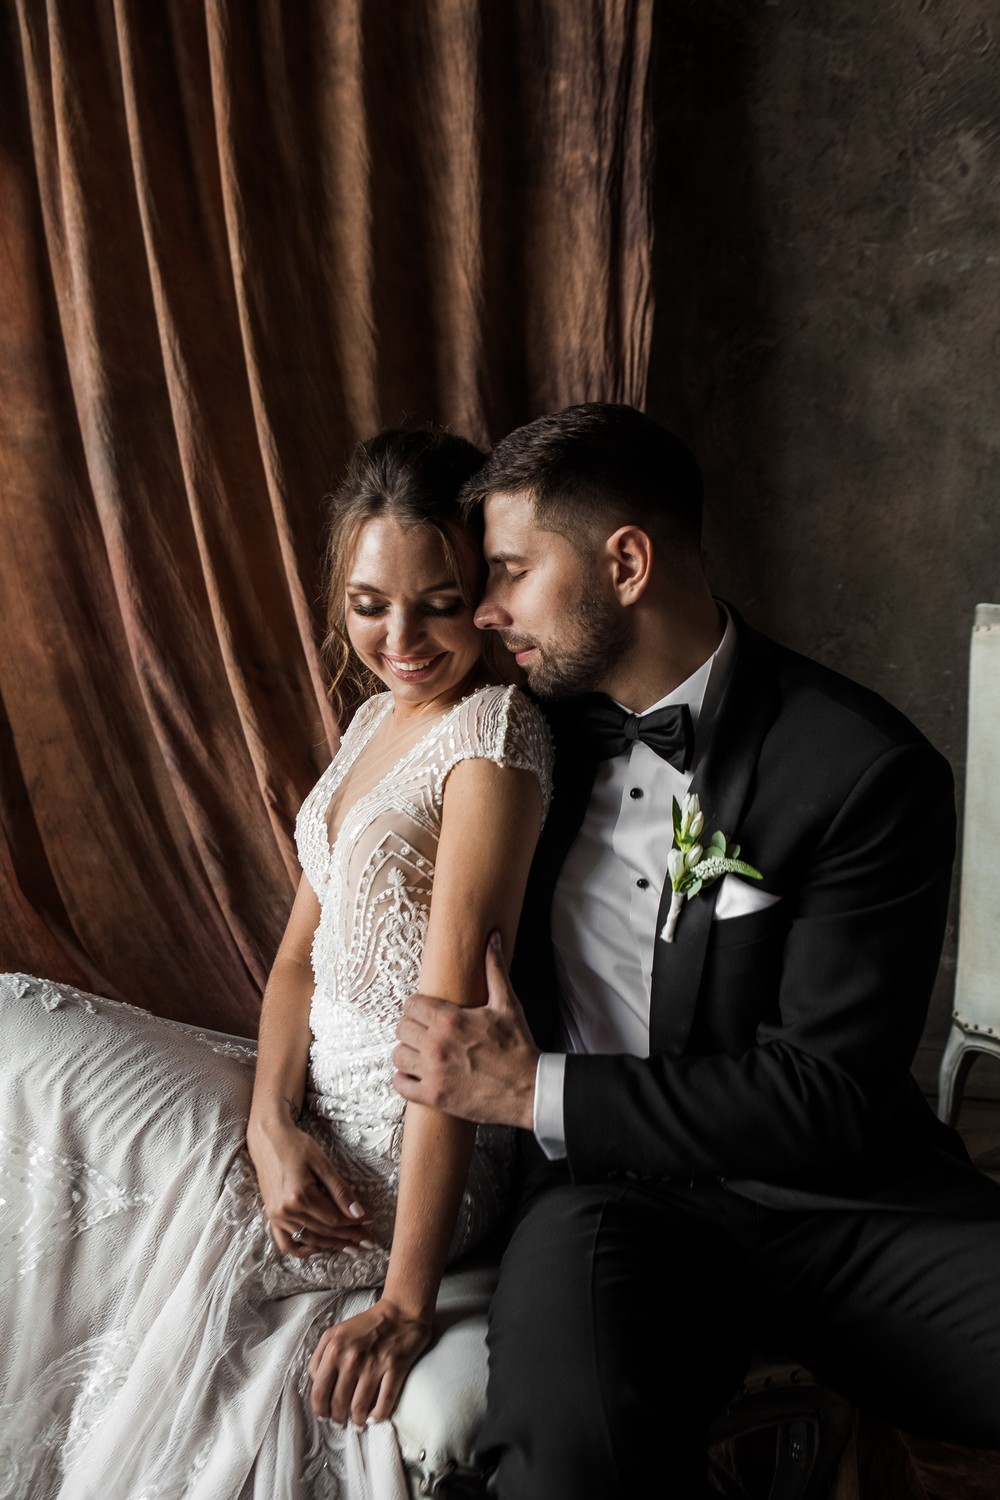 Саша+Оля|wedding|2018